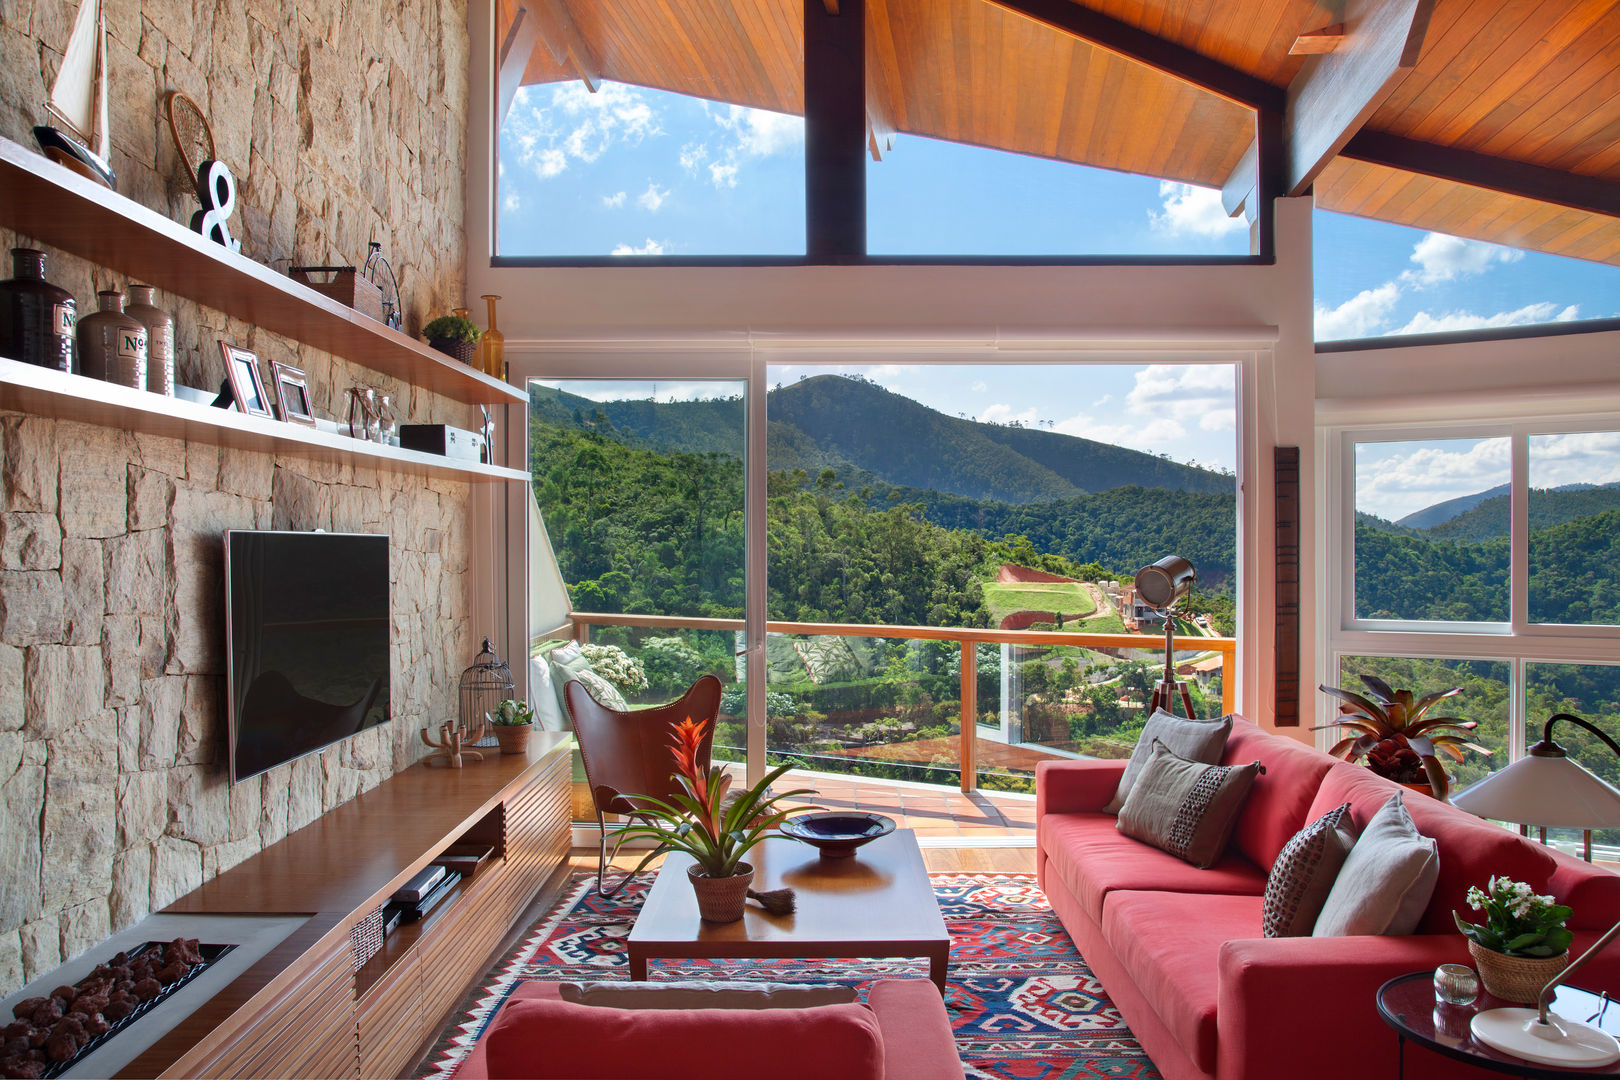 Casa Itaipava, sadala gomide arquitetura sadala gomide arquitetura Country style living room